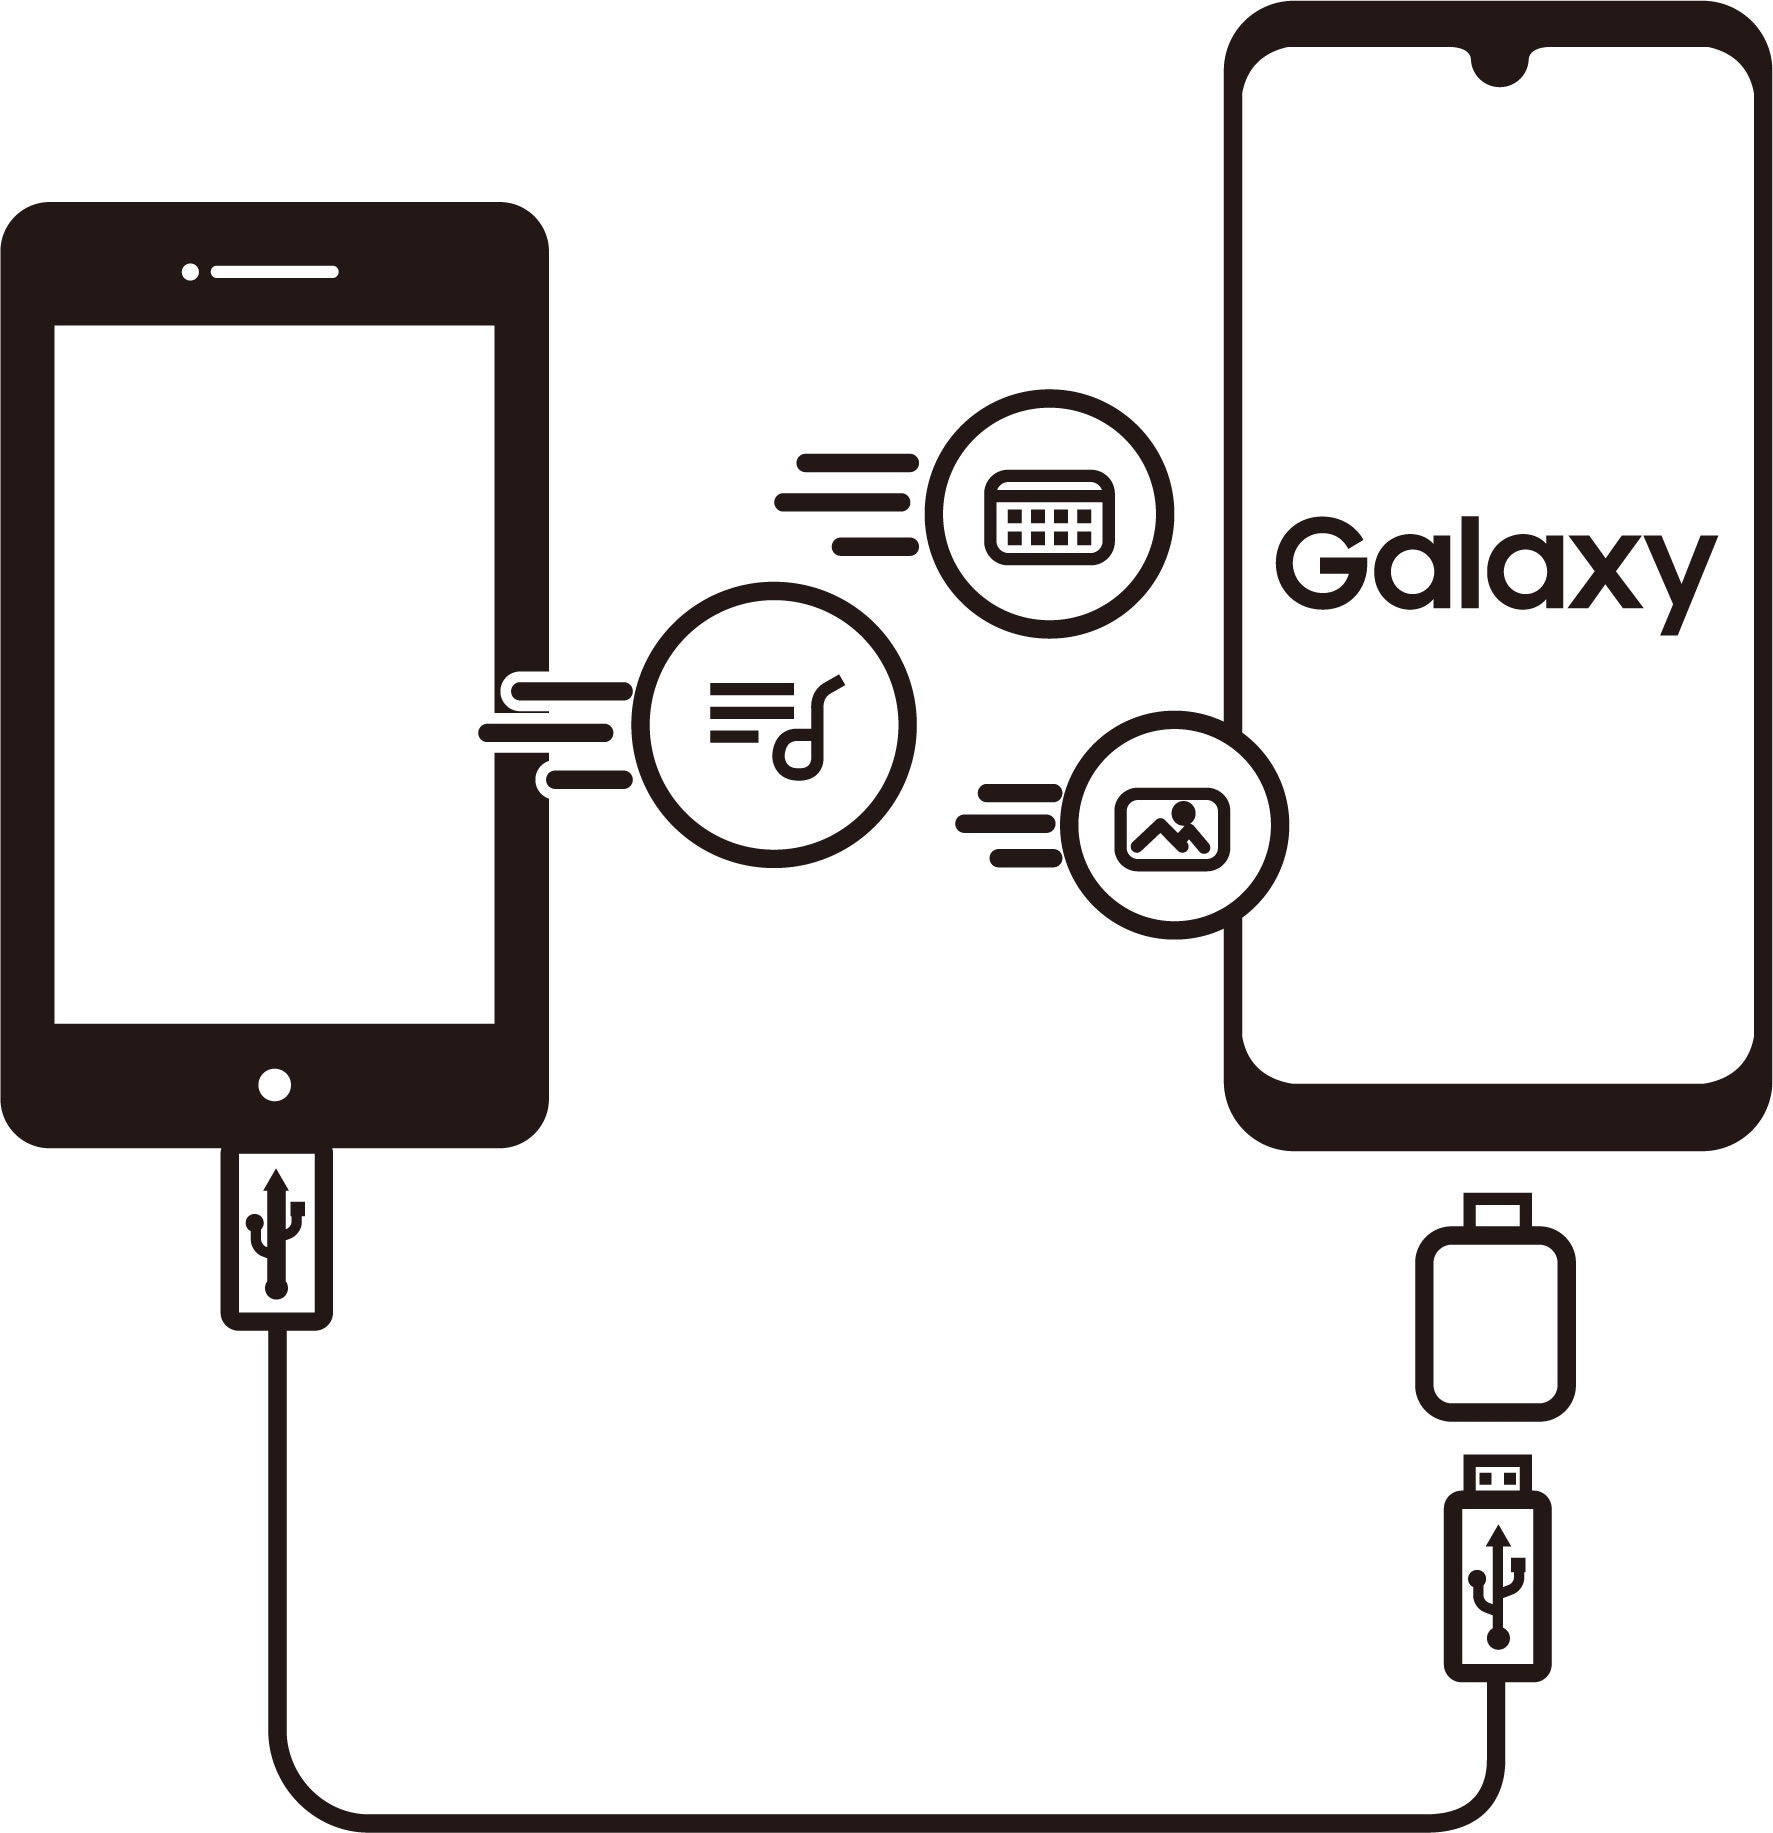 スマートフォンからGalaxy（ギャラクシー）のスマートフォンにデータを移行している。